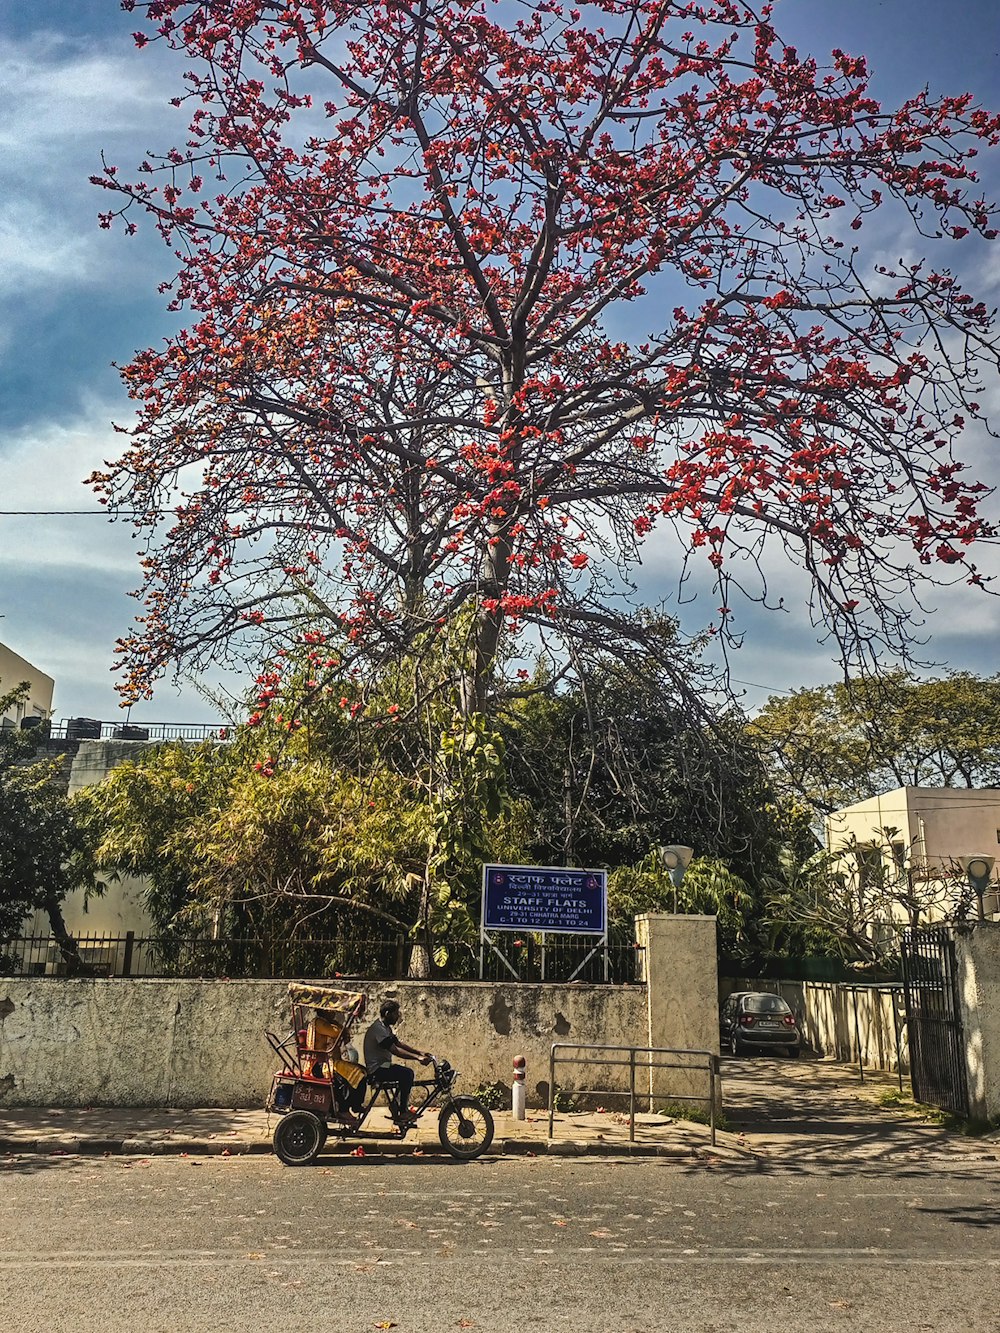 Ein Motorrad parkt neben einem Baum mit roten Blumen